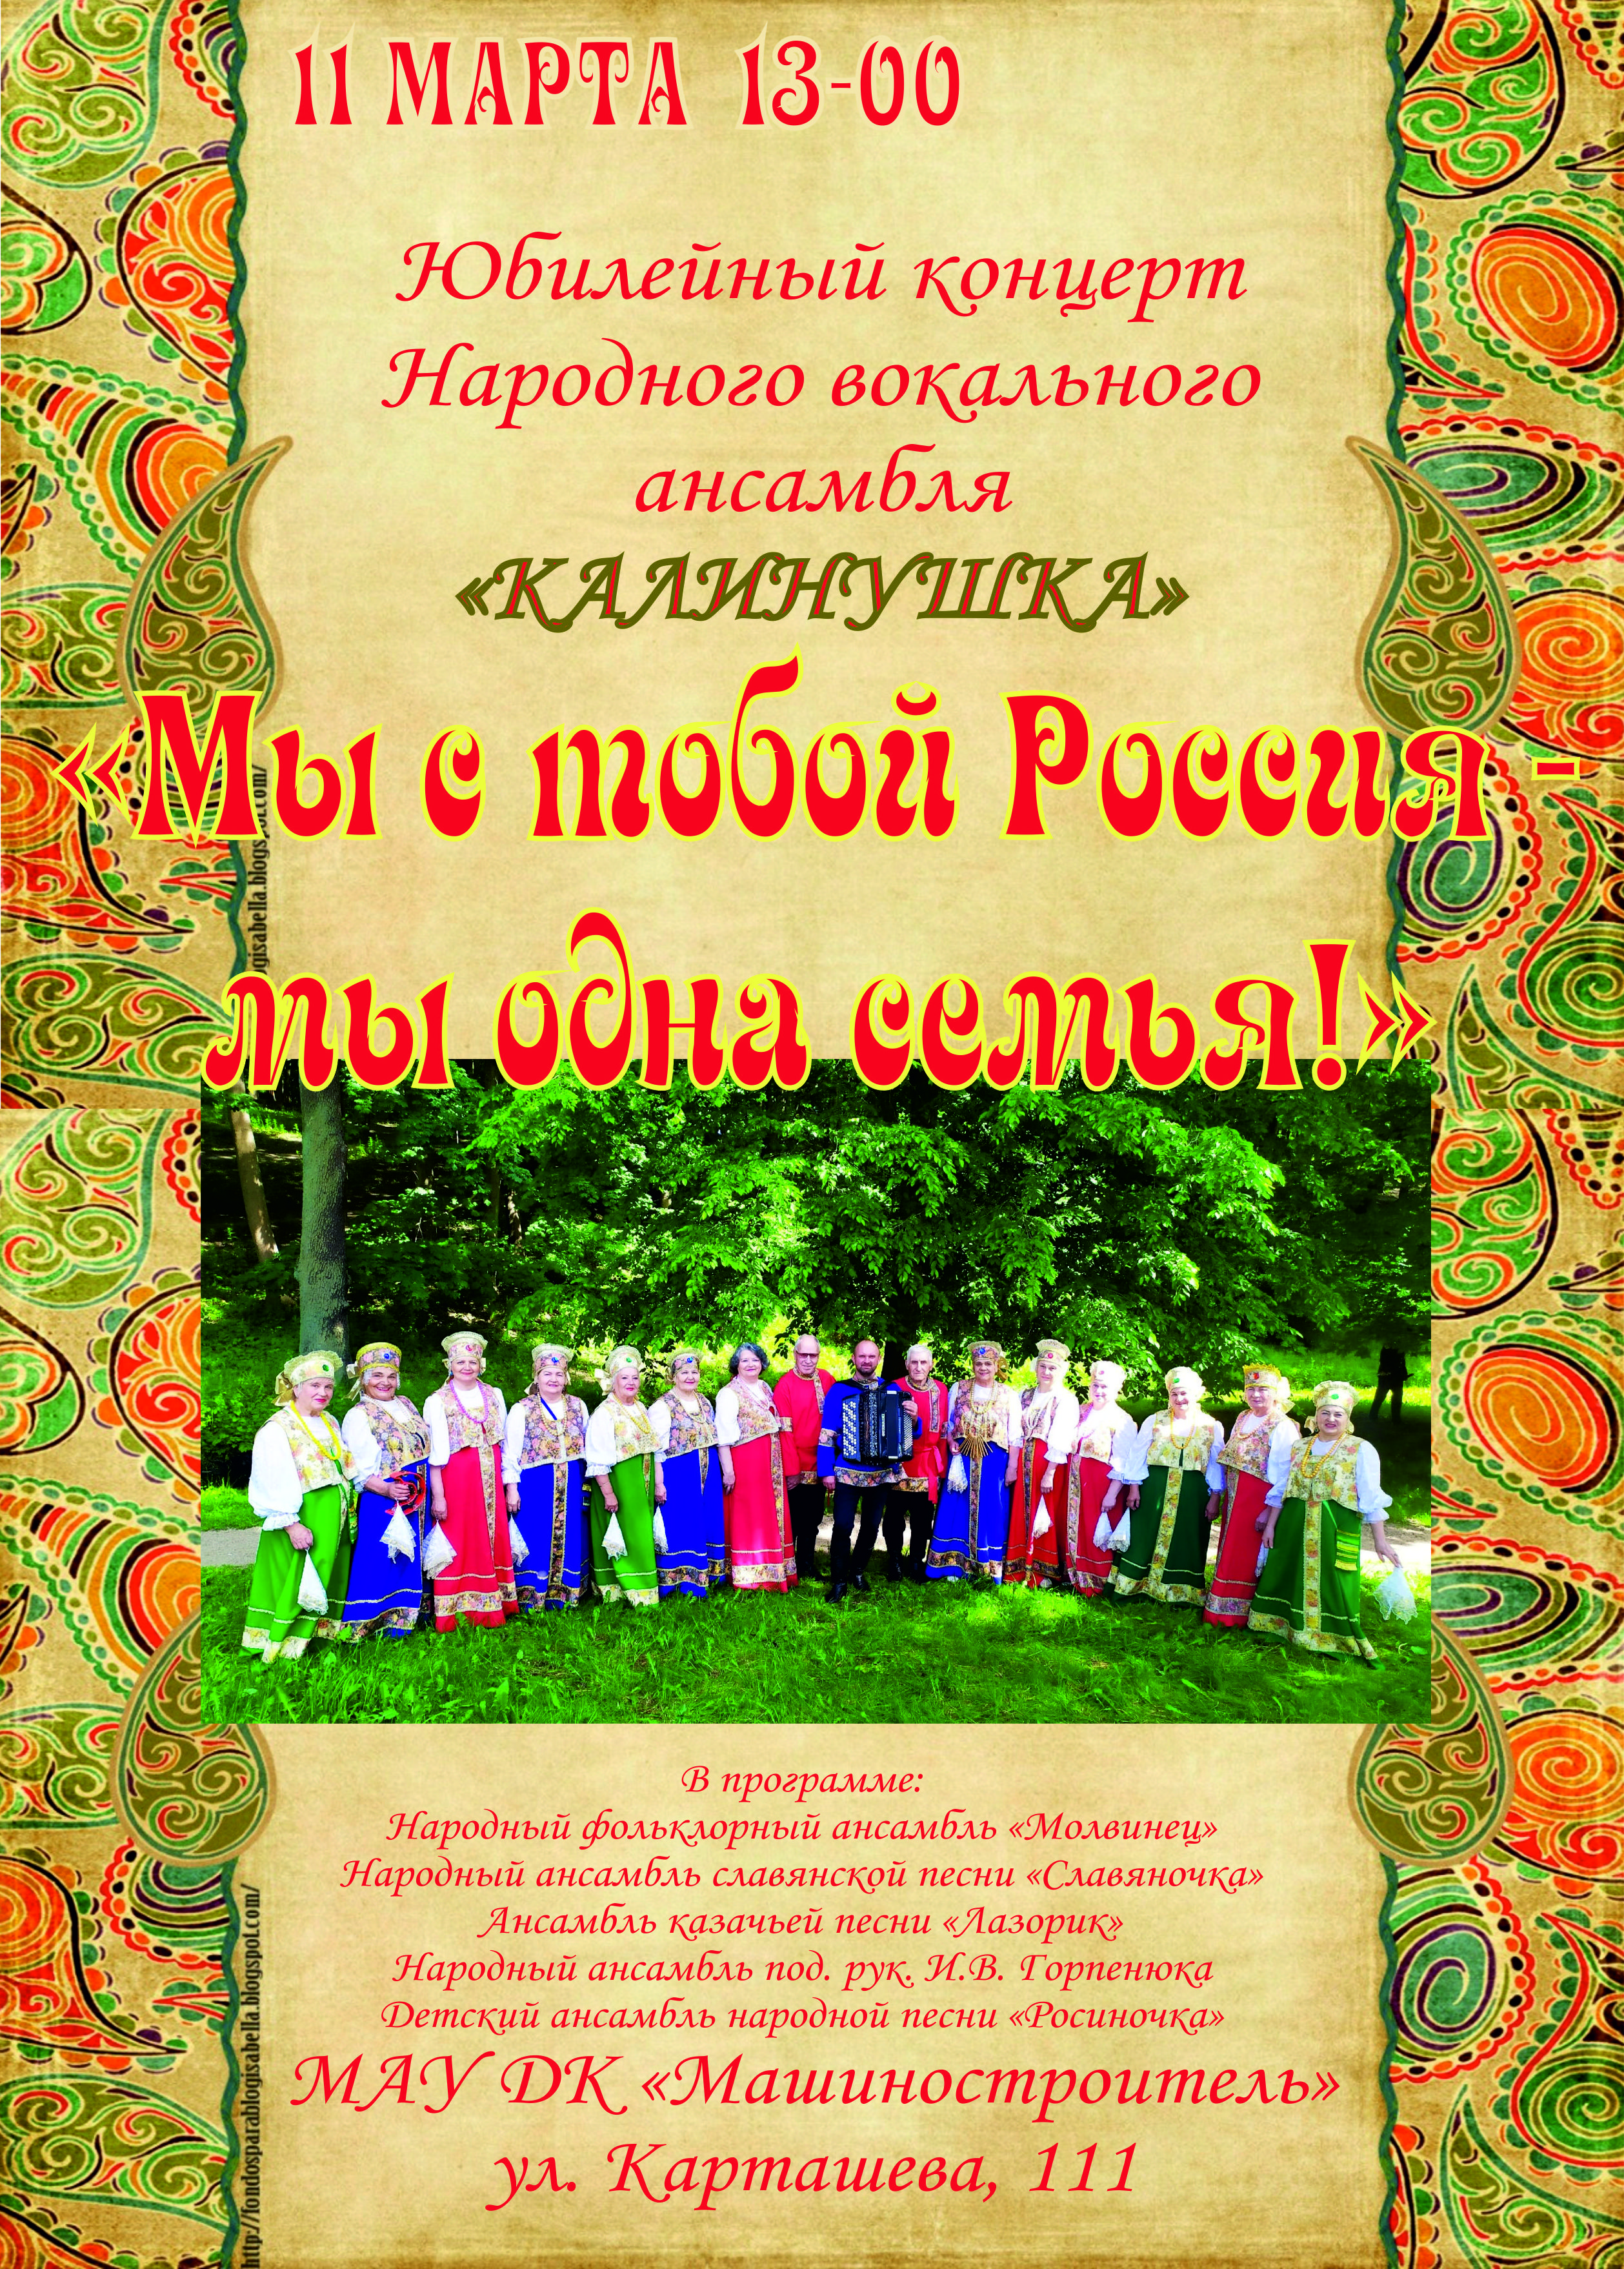 Юбилейный концерт Народного вокального ансамбля "Калинушка" 